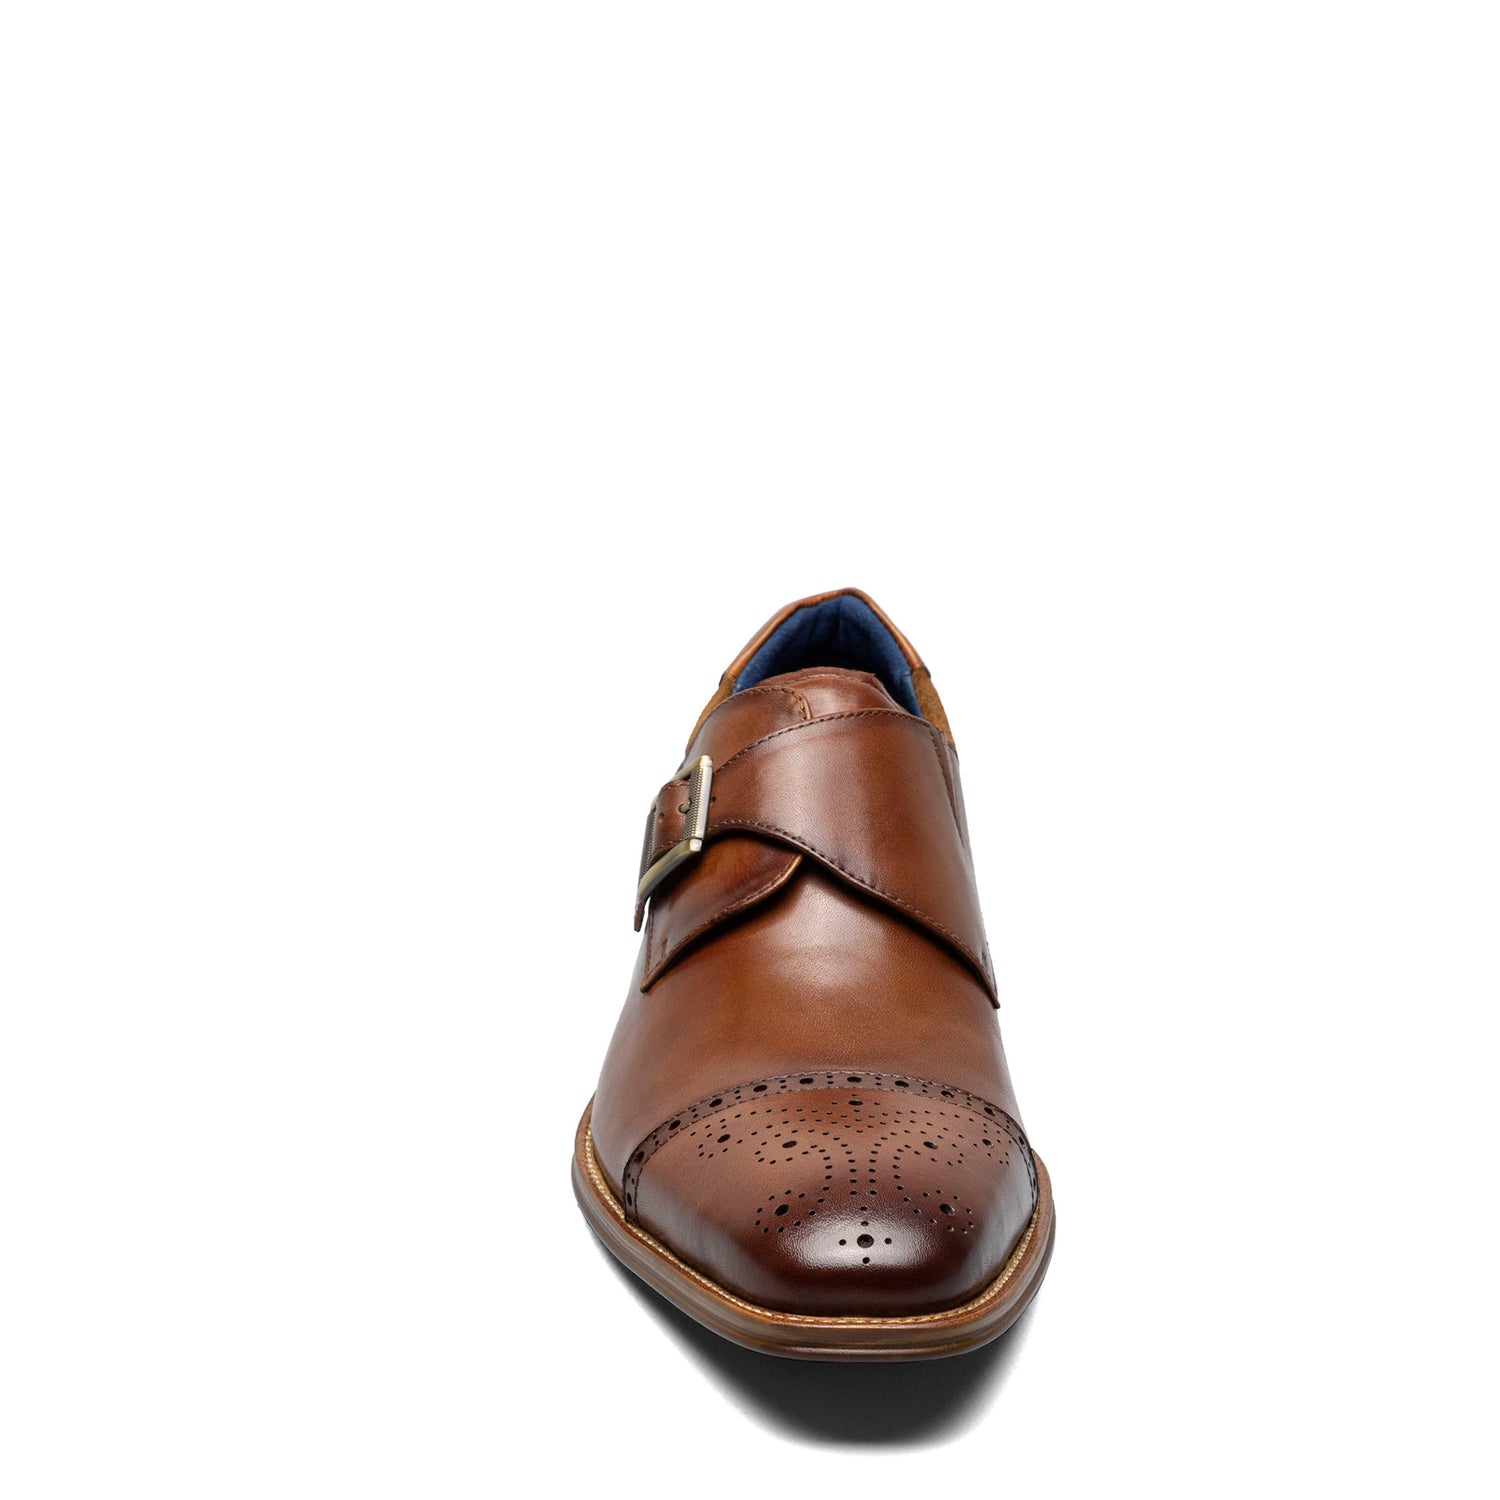 Peltz Shoes  Men's Stacy Adams Mathis Cap Toe Monk Strap Cognac 25540-221